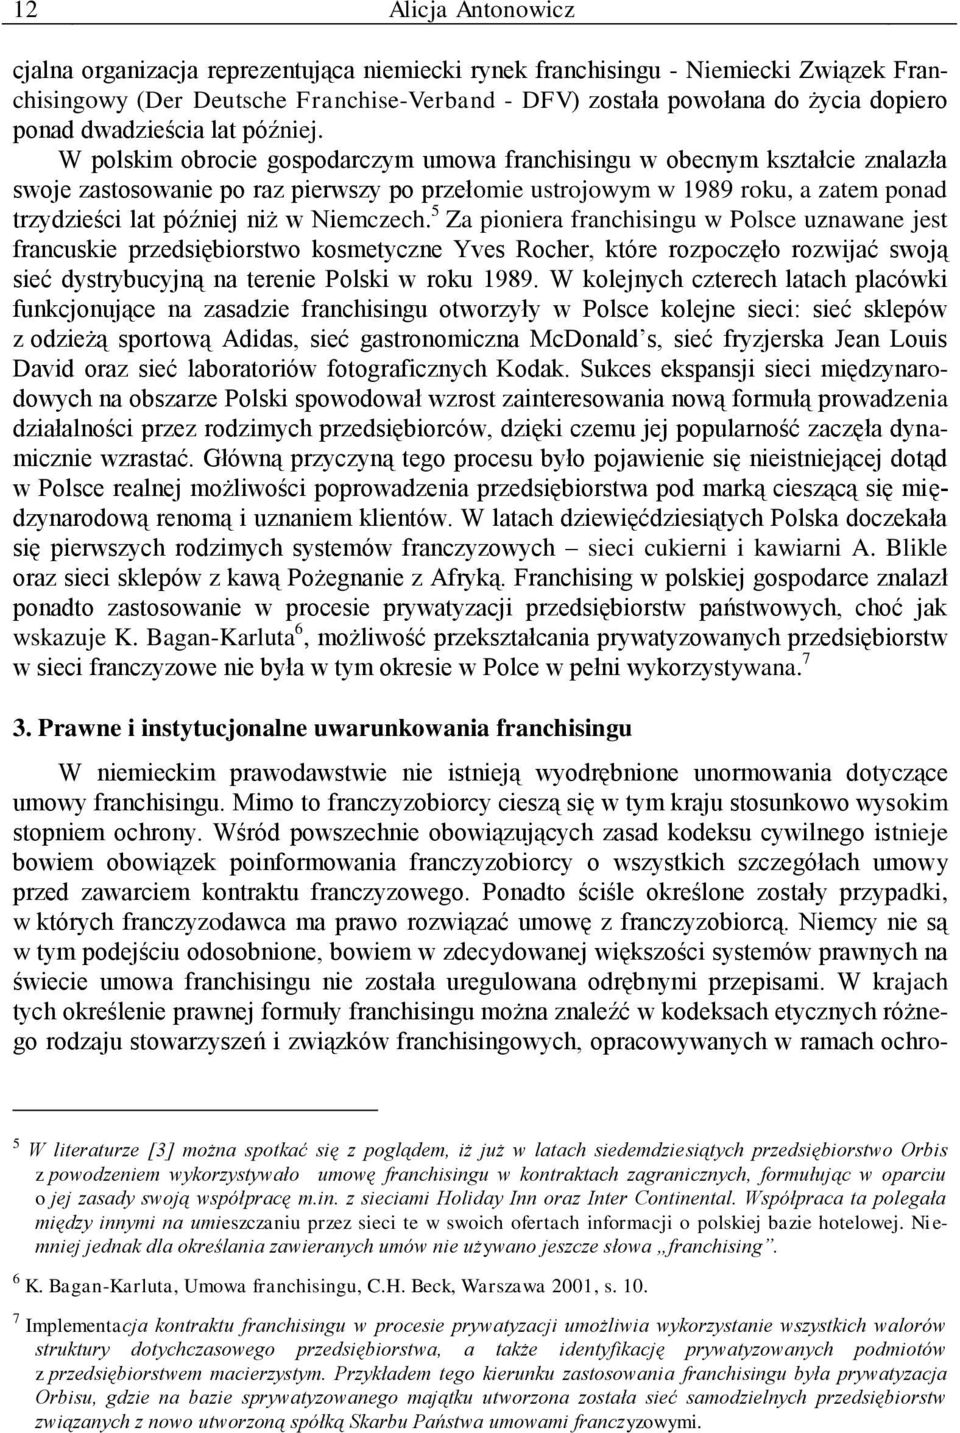 W polskim obrocie gospodarczym umowa franchisingu w obecnym kształcie znalazła swoje zastosowanie po raz pierwszy po przełomie ustrojowym w 1989 roku, a zatem ponad trzydzieści lat później niż w